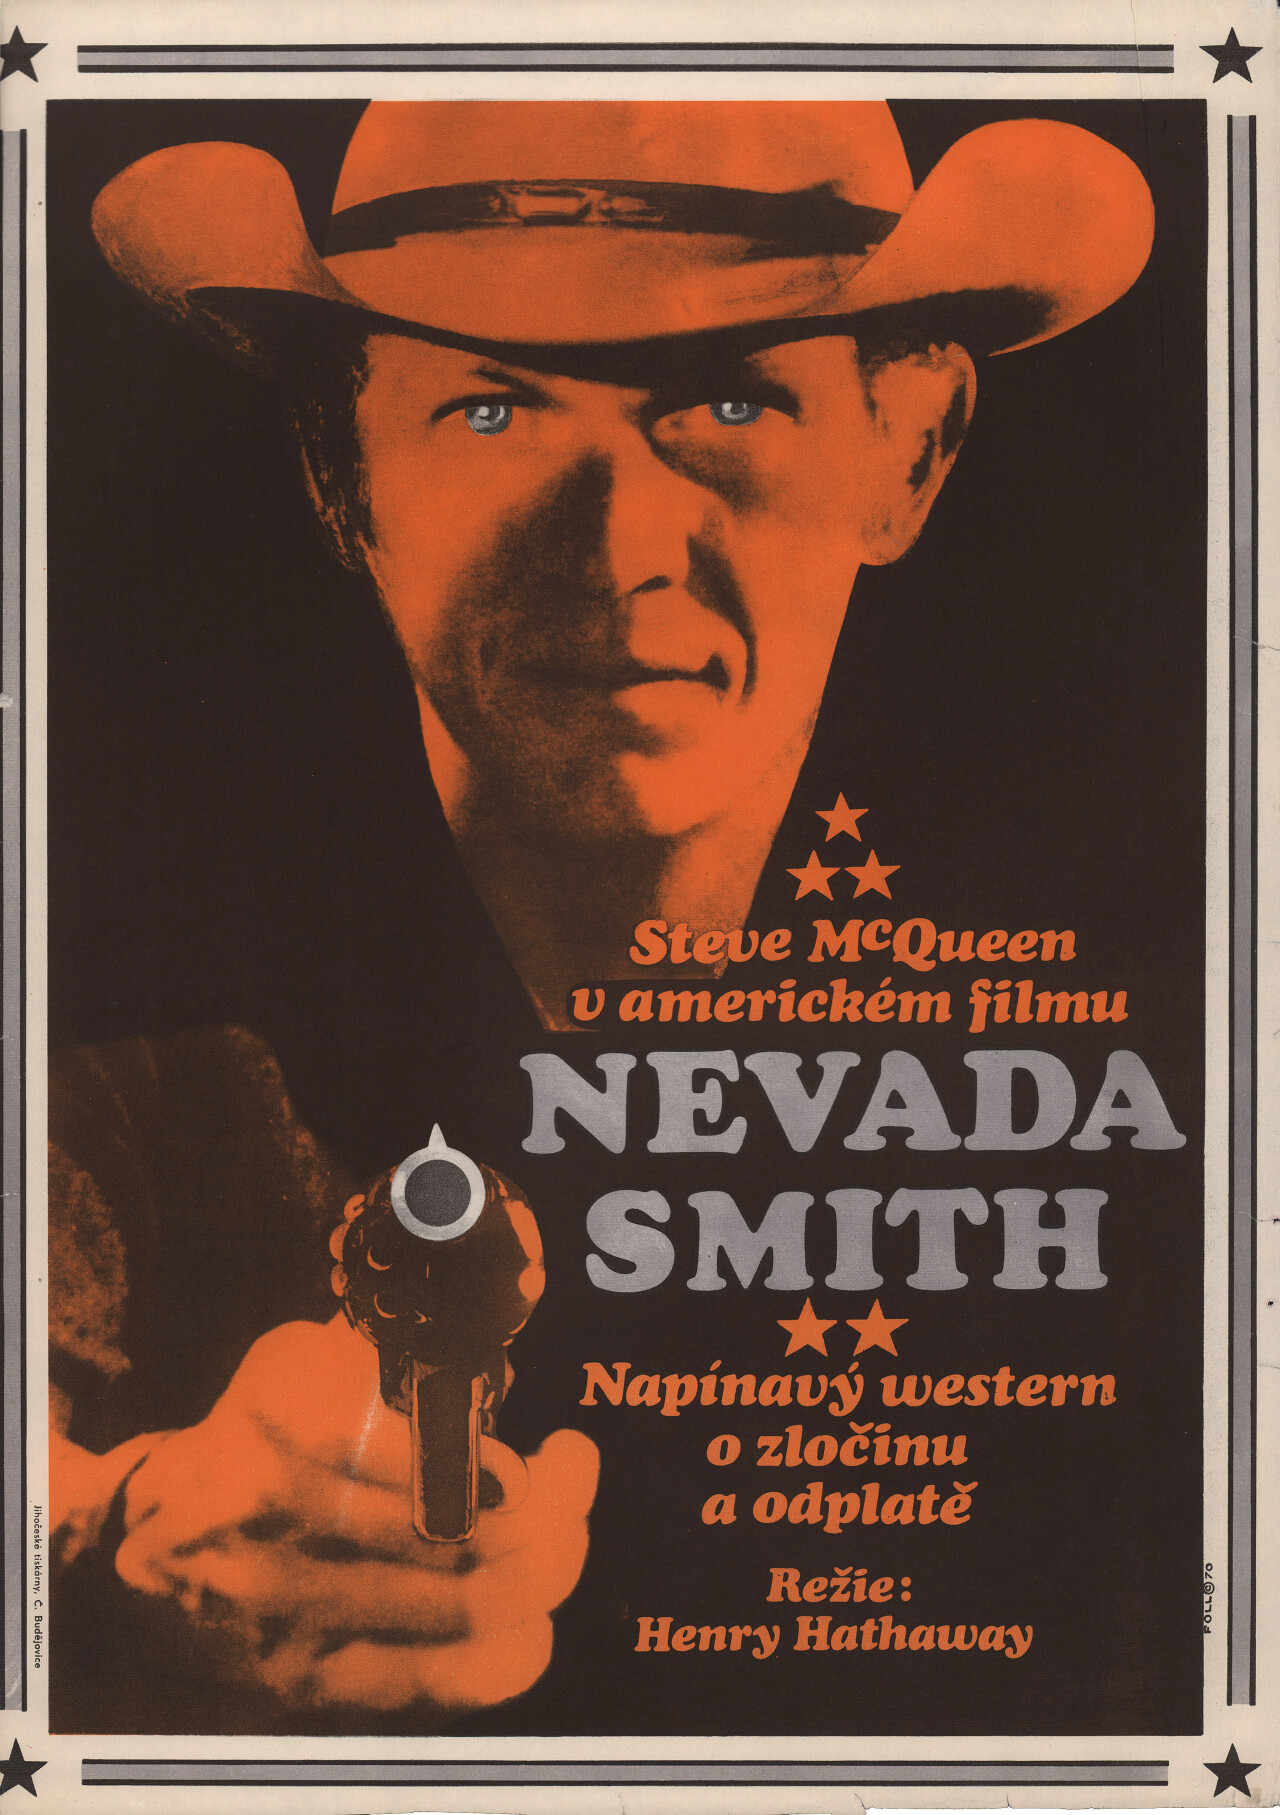 Невада Смит (Nevada Smith, 1966), режиссёр Генри Хэтэуэй, чехословацкий постер к фильму, автор Доброслав Фолль (графический дизайн, 1970 год)